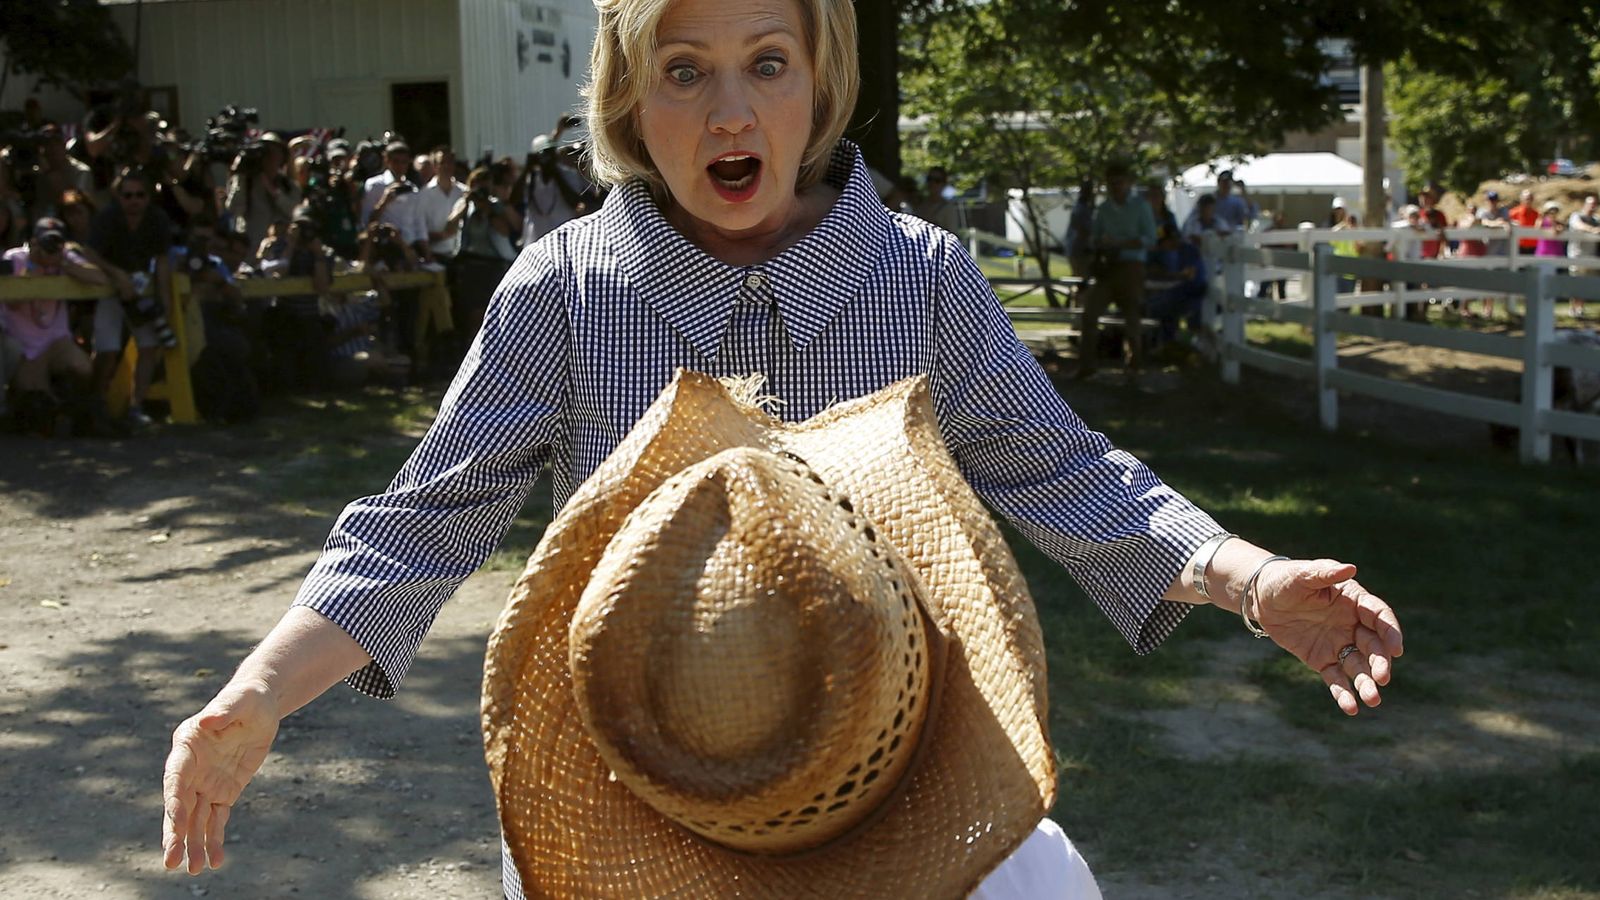 Foto: La candidata demócrata Hillary Clinton durante un acto de campaña en Des Moines, Iowa, el 15 de agosto de 2016 (Reuters).